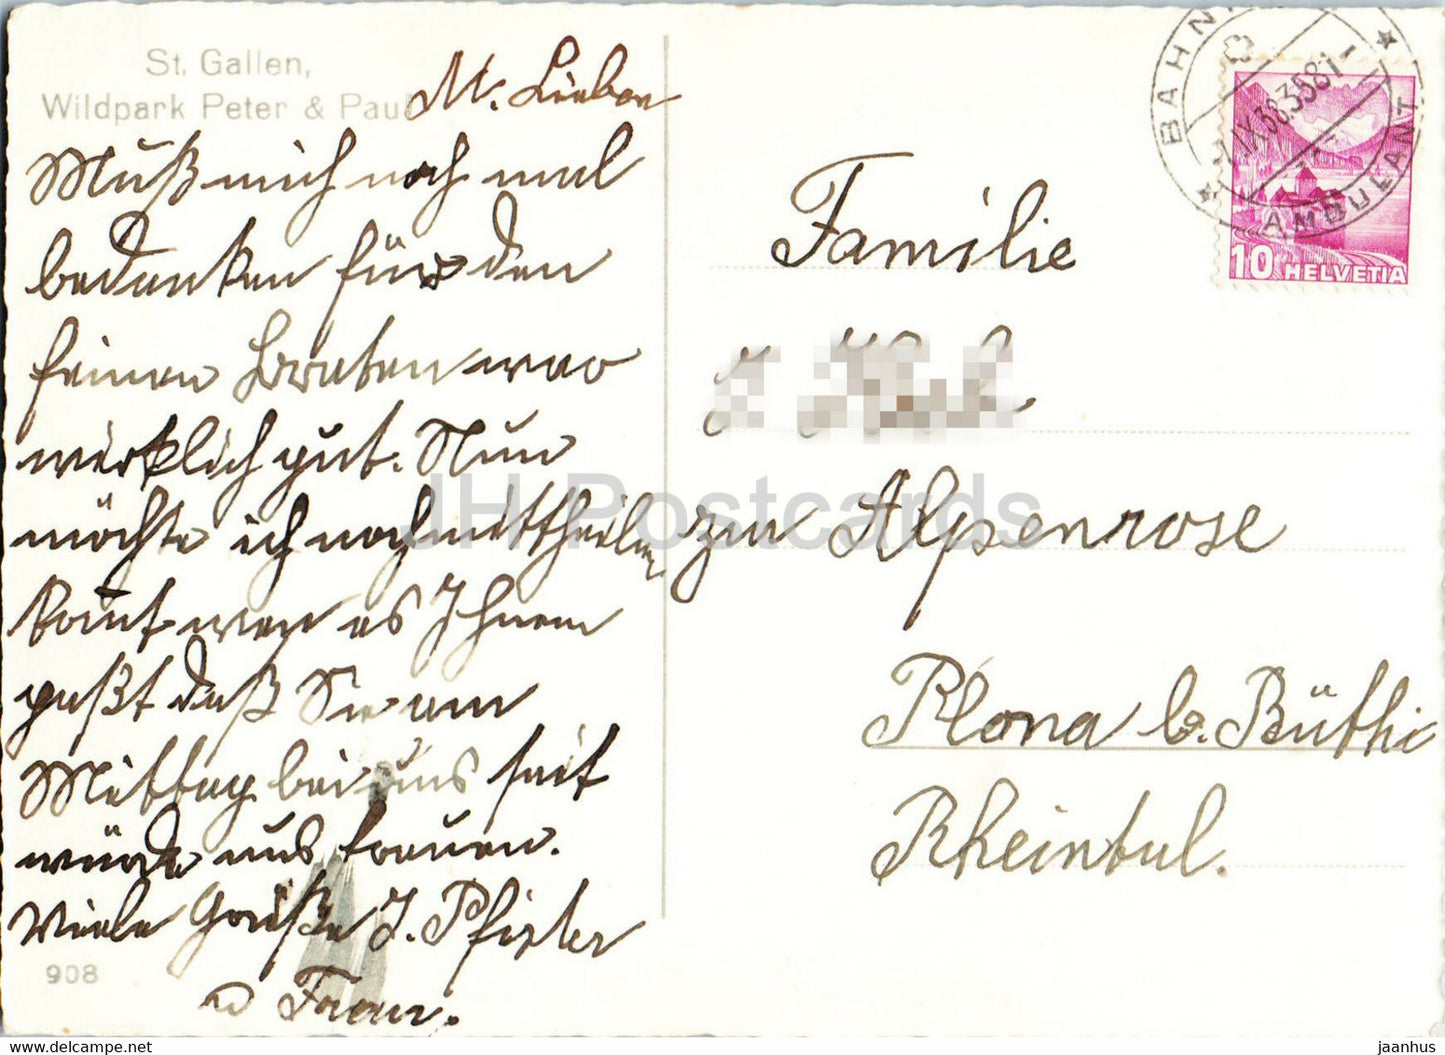 St. Gallen - Wildpark Peter &amp; Paul - Steinbock - Hirsche - Tiere - 908 - 1938 - alte Postkarte - Schweiz - gebraucht